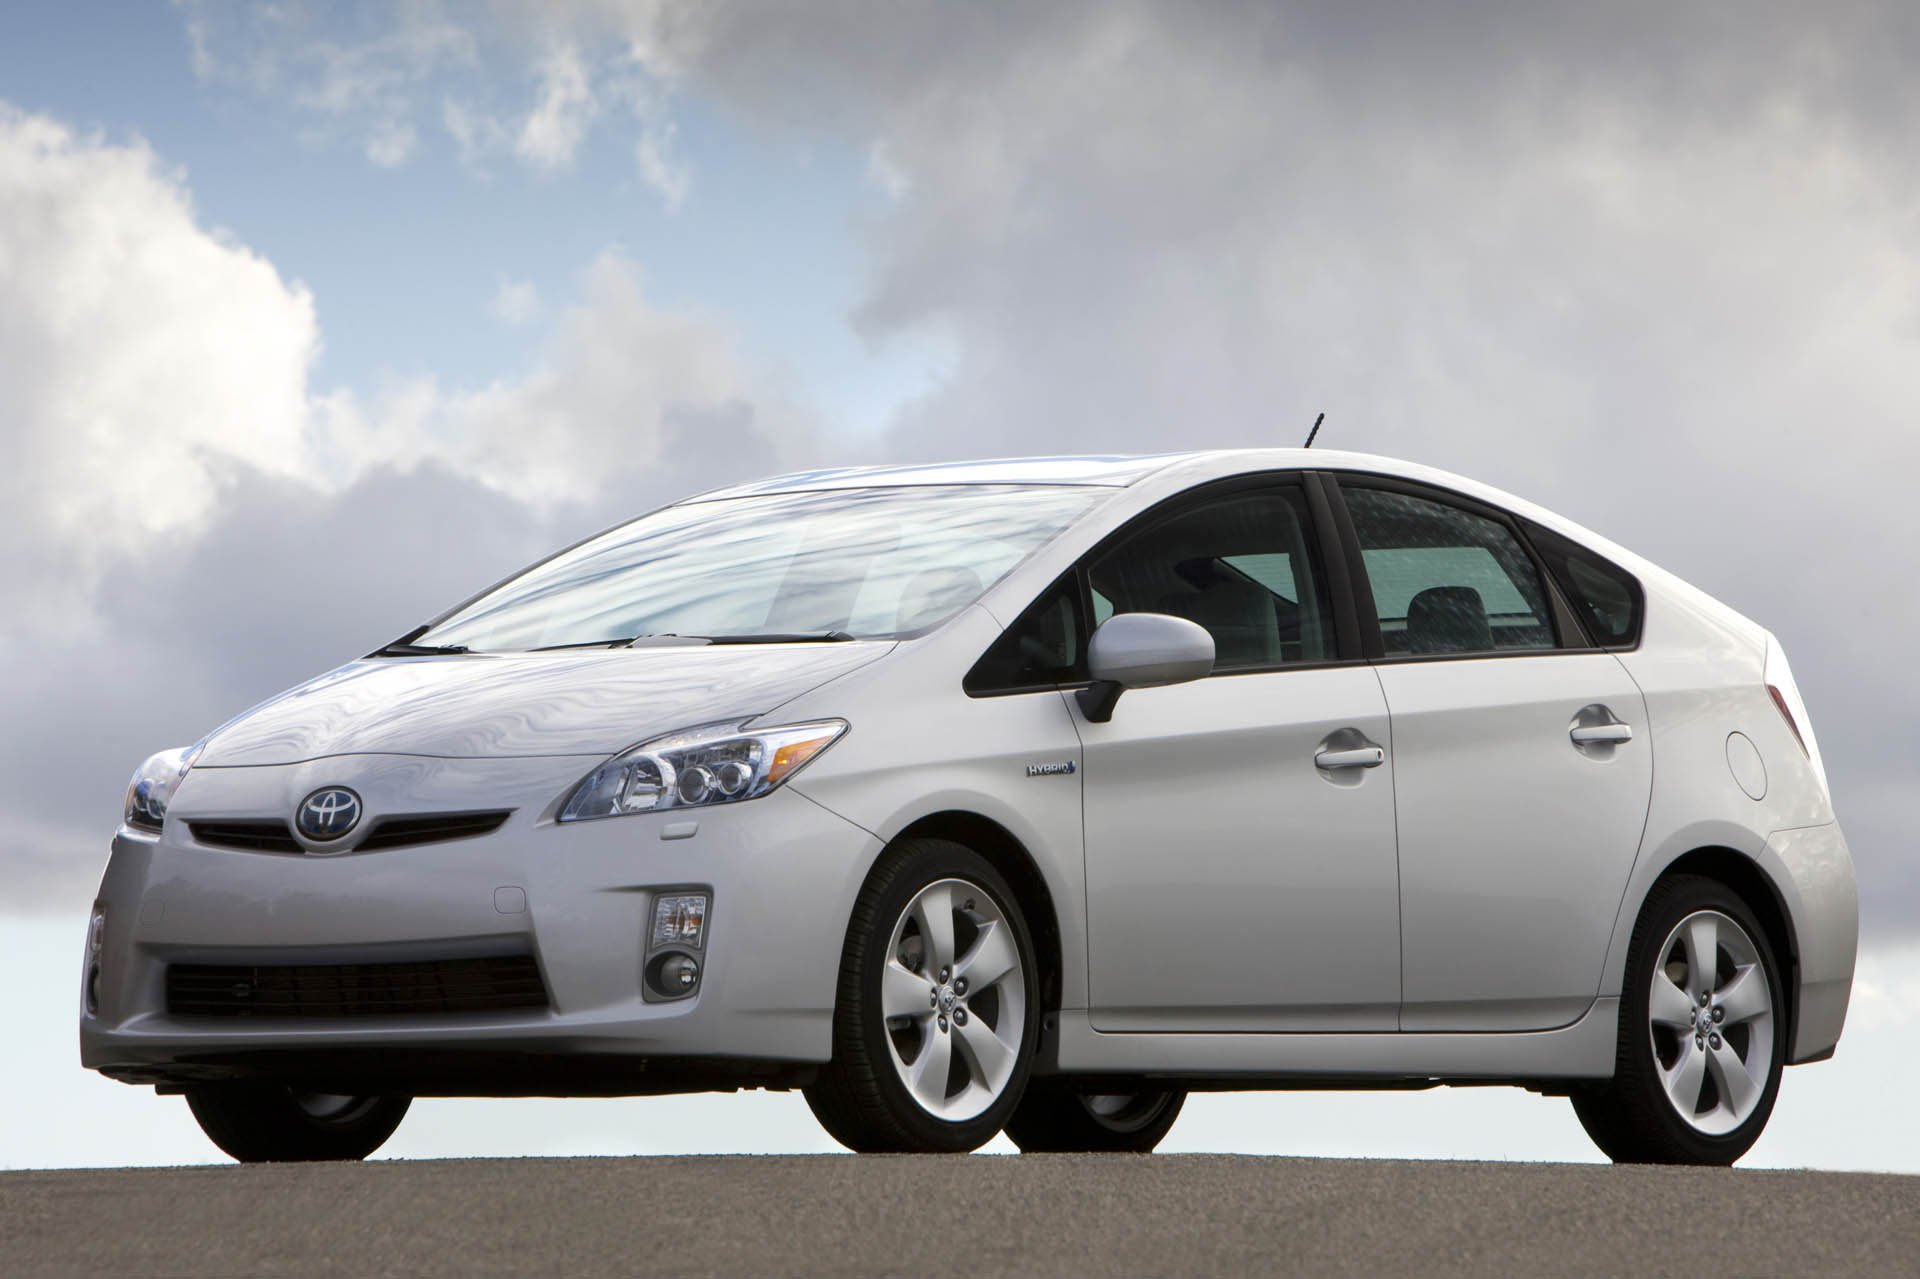 Gần 1 triệu xe Toyota bị thu hồi tại Hoa Kỳ liên quan đến lỗi túi khí - ảnh 1